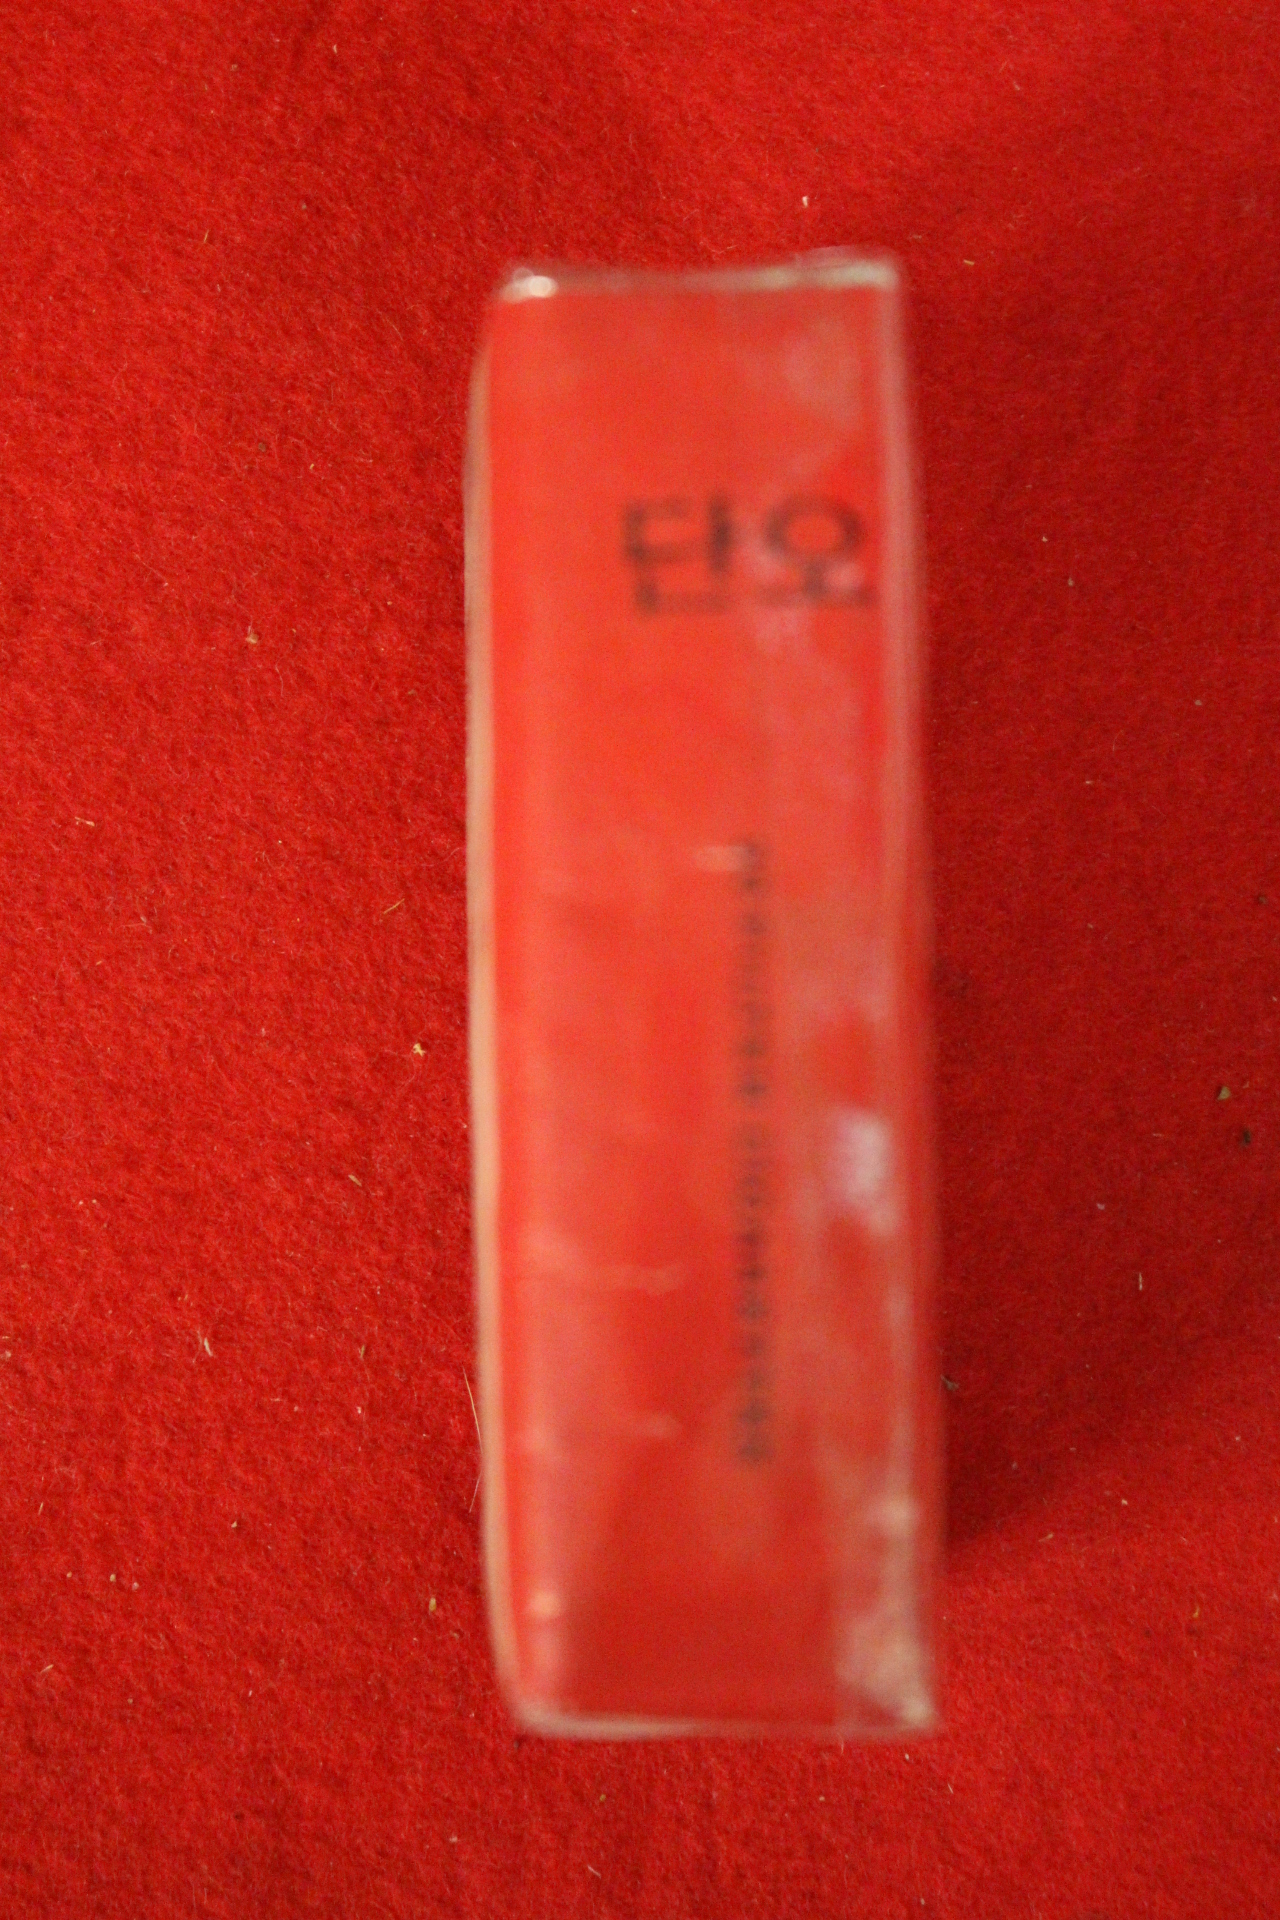 1974년 서울지하철종로선개통기념 단오 담배 포갑